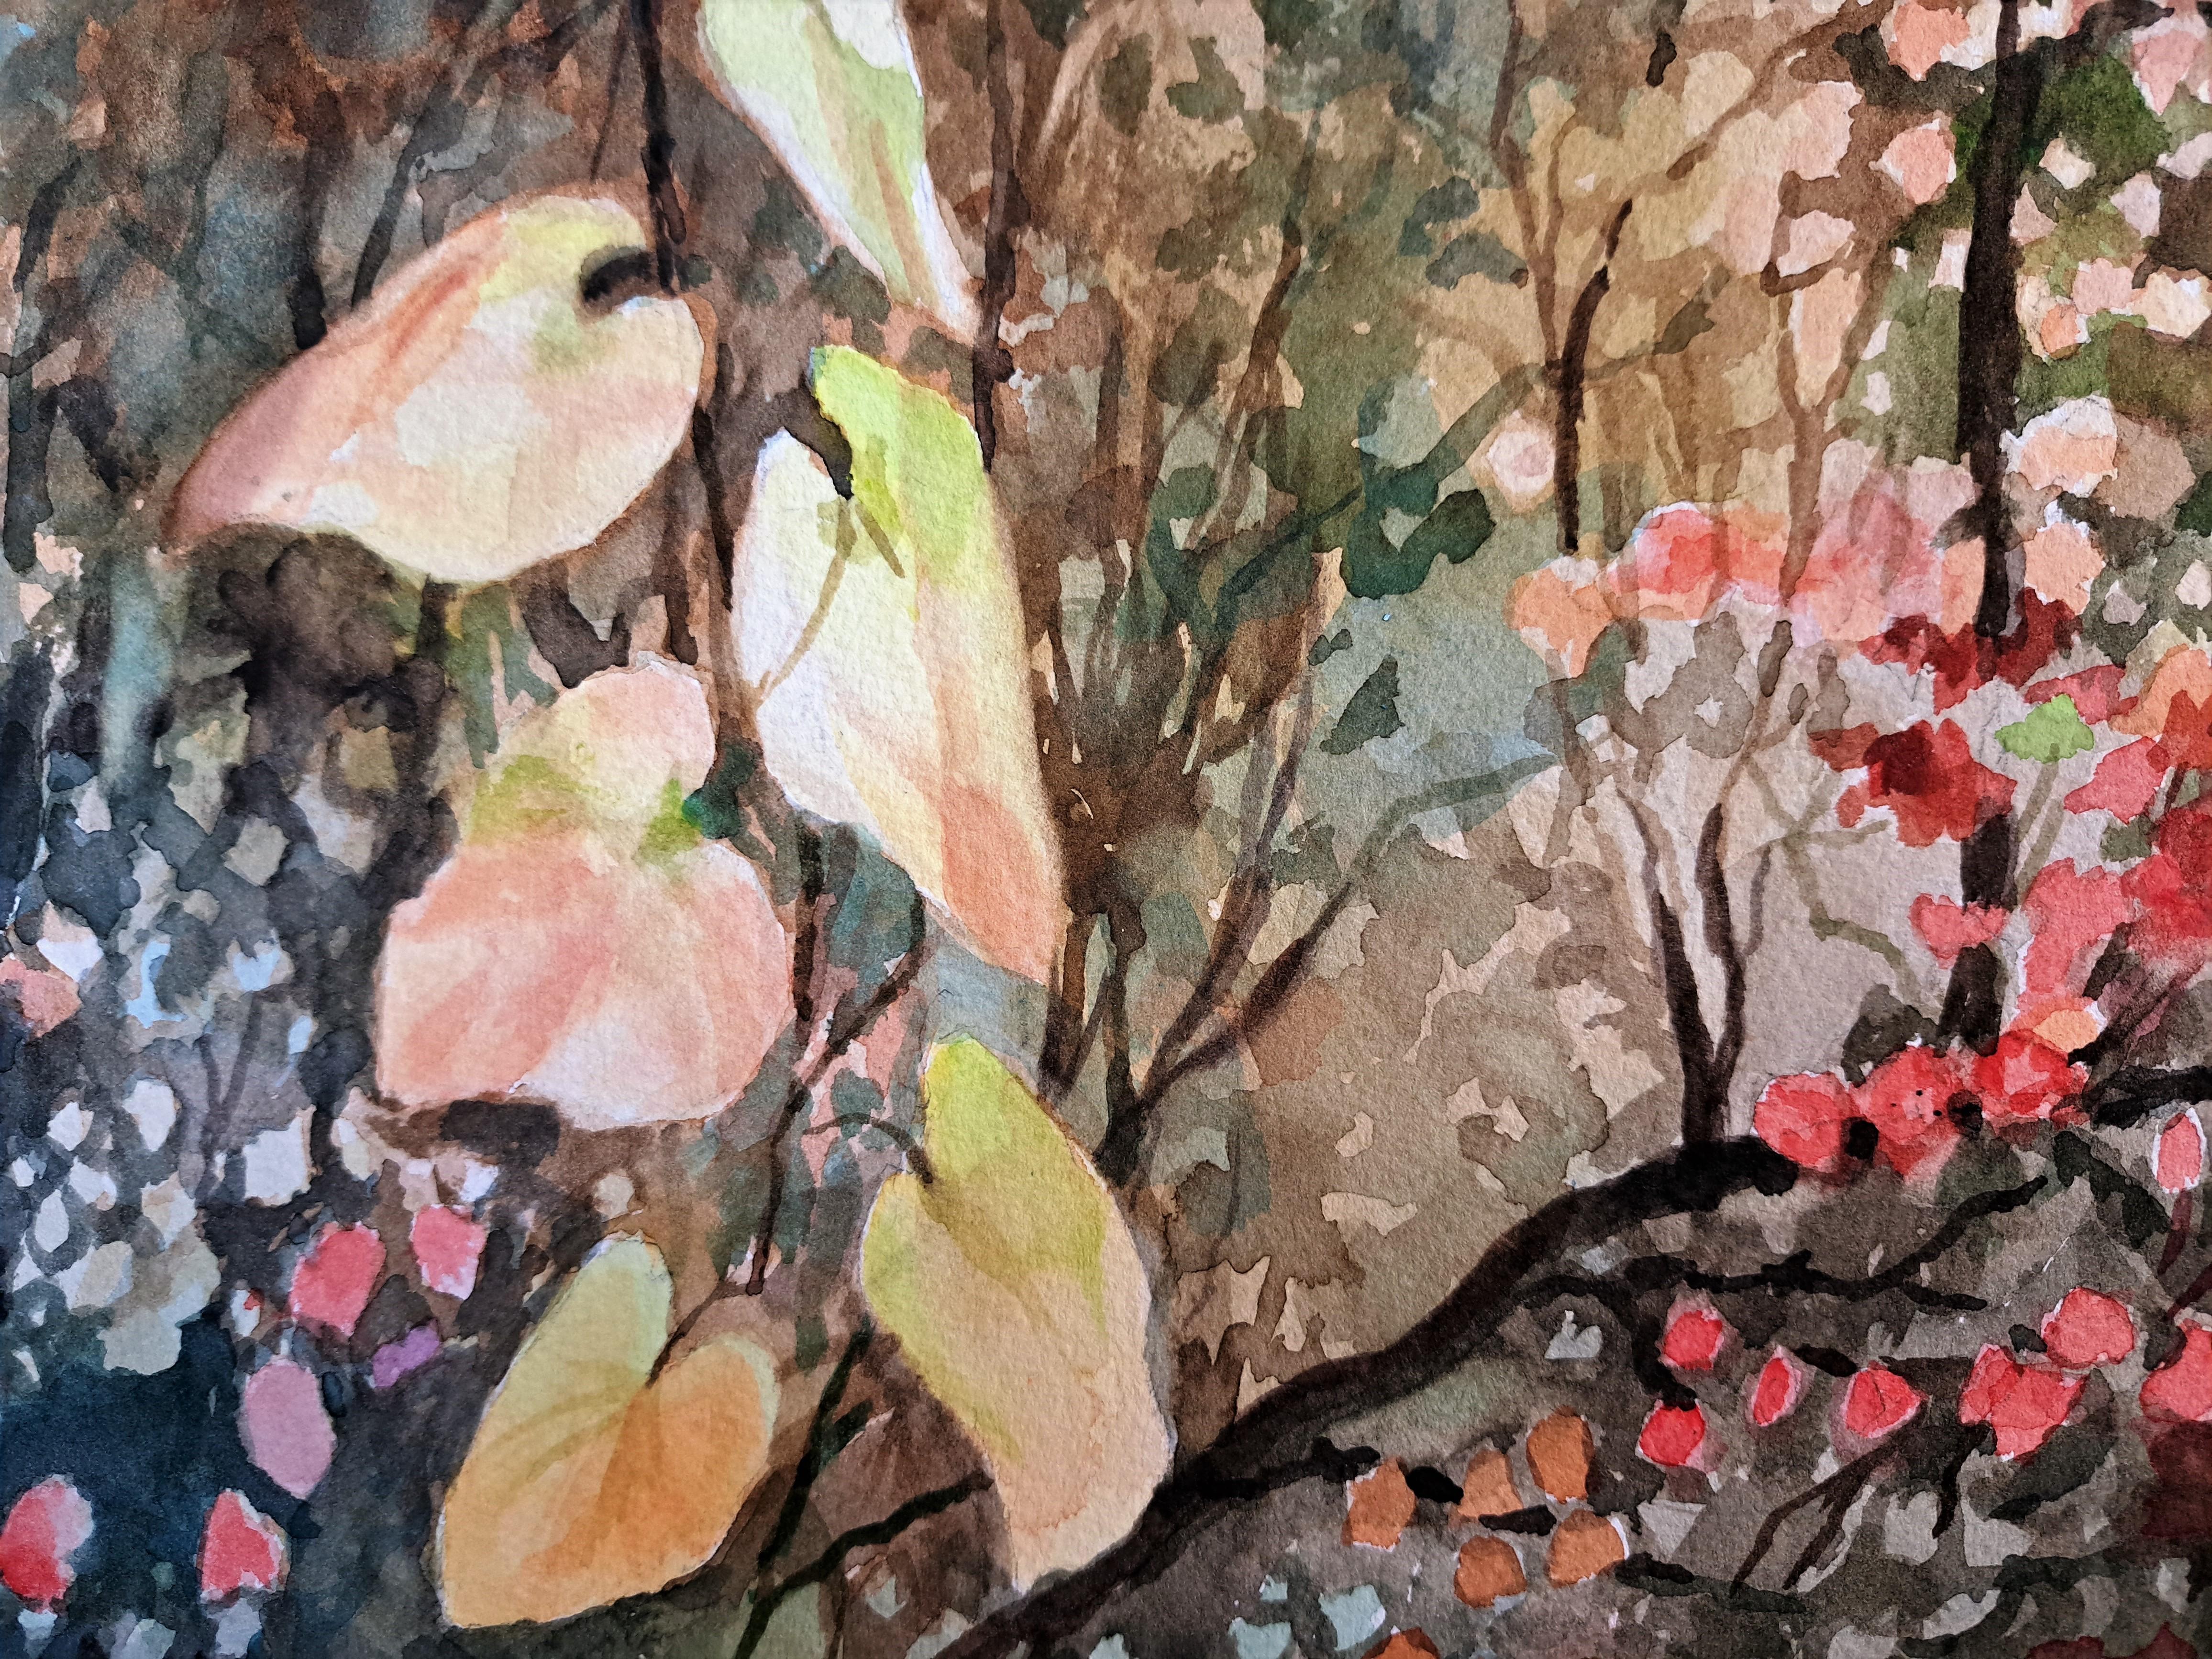 <p>Kommentare der Künstlerin<br>Die Künstlerin Catherine gibt einen Einblick in die wunderschönen herbstlichen Wälder Kaliforniens und präsentiert ihr scharfes Auge für Farben und Details in ihren impressionistischen Werken. Unter Bezugnahme auf ein